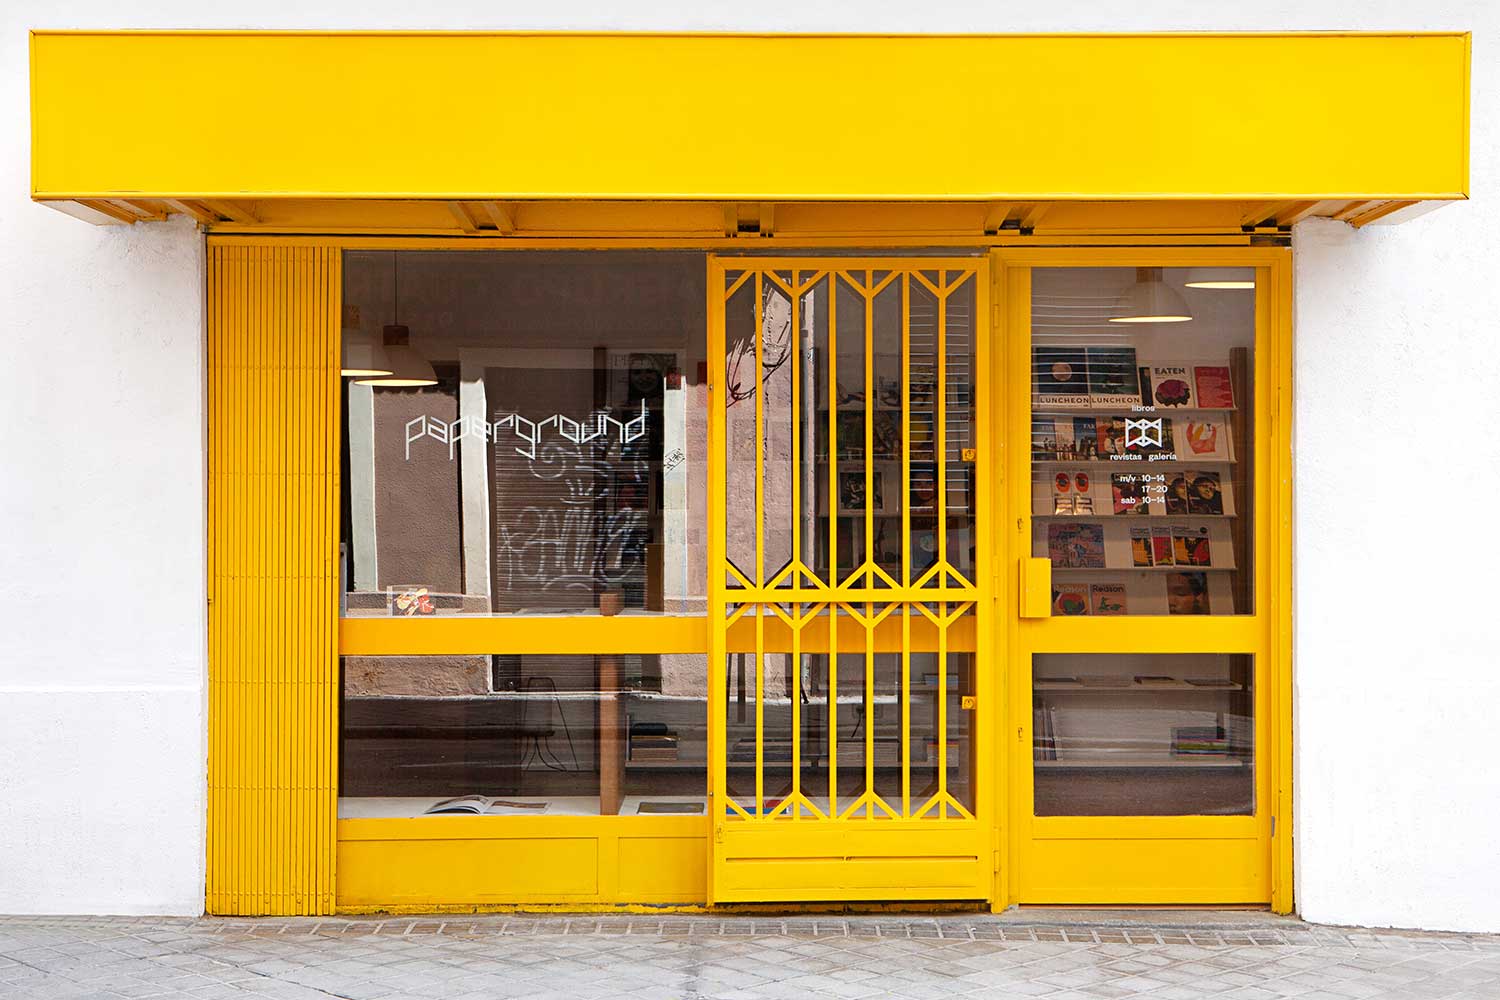 Librería Paperground especializada en publicaciones independientes en Madrid, fachada.